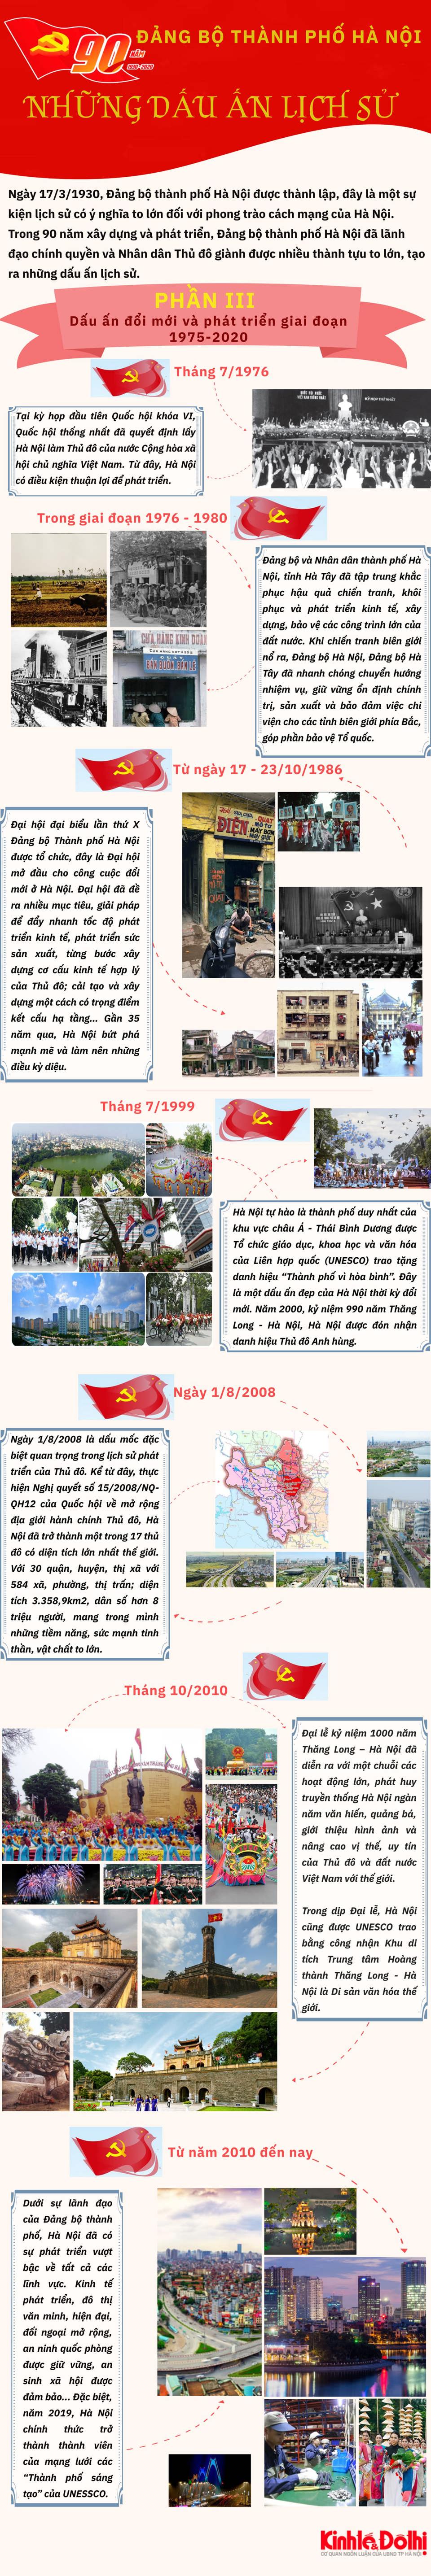 [Infographic] 90 năm Đảng bộ Thành phố Hà Nội: Những dấu ấn lịch sử (phần 3) - Ảnh 1